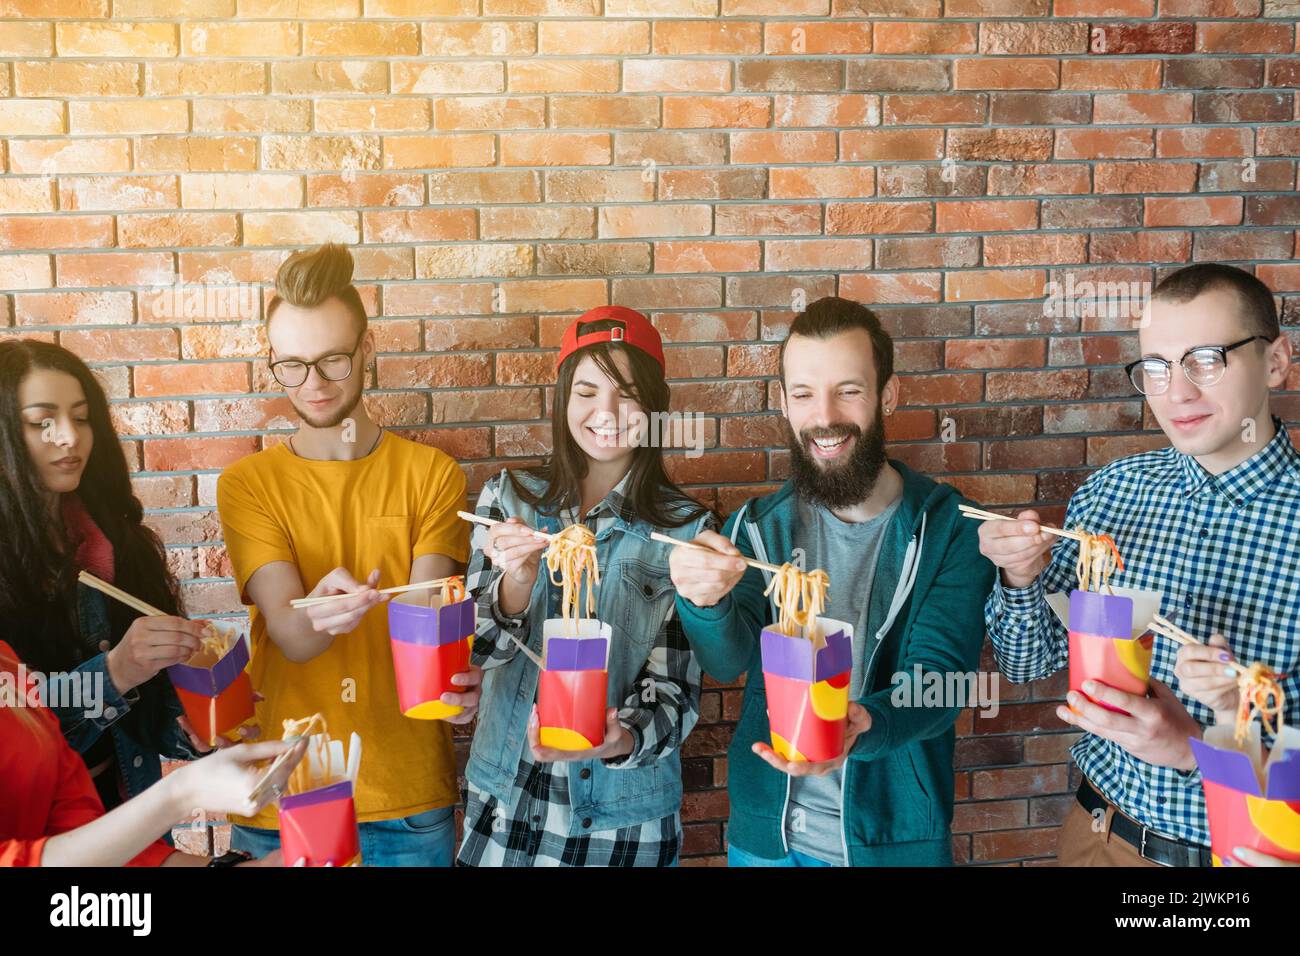 millennials business lunch corporate team spirit Stock Photo